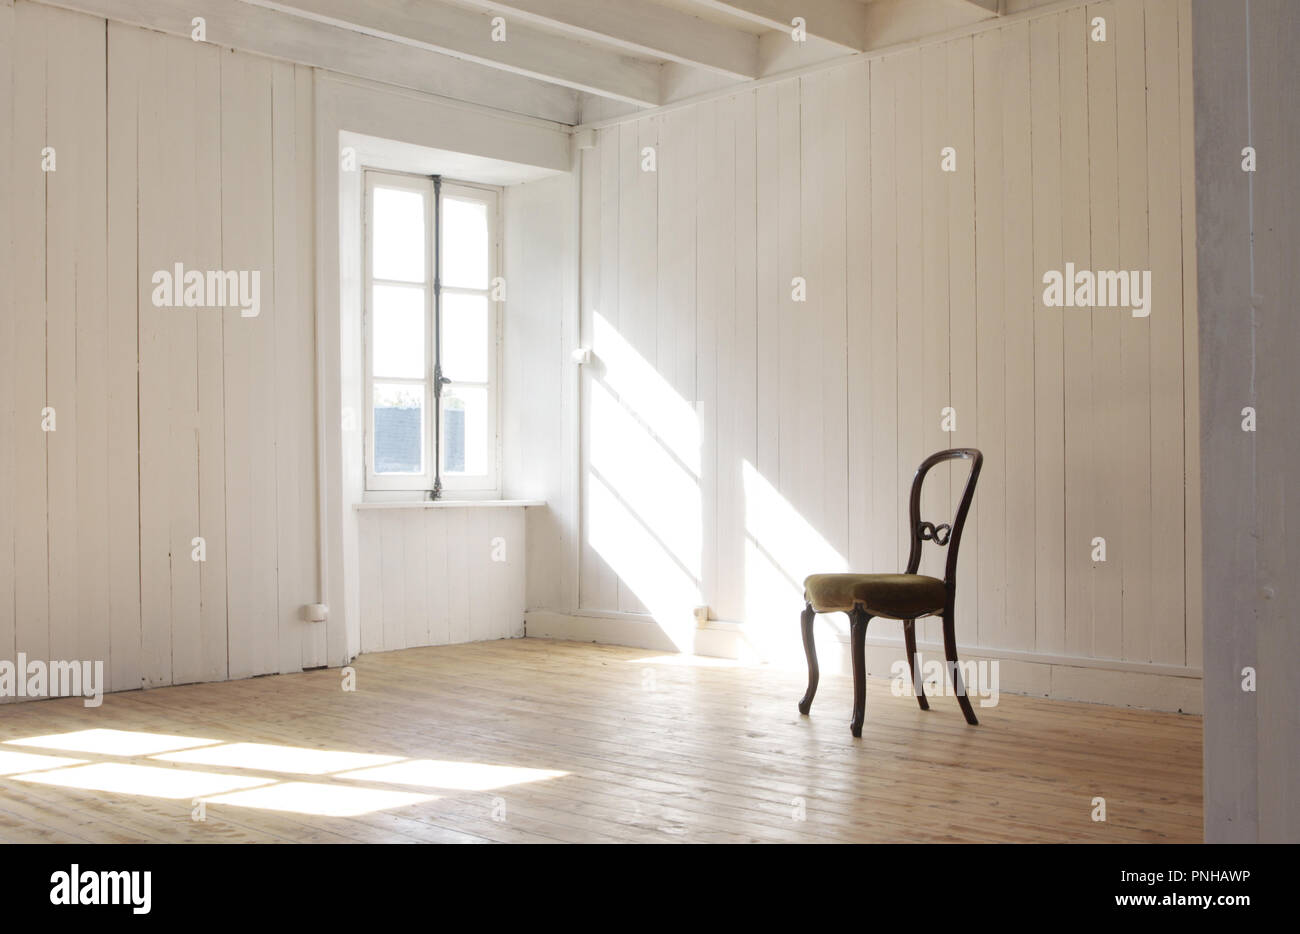 Chaise solitaire en blanc salle vide avec le soleil à travers la vitre Banque D'Images